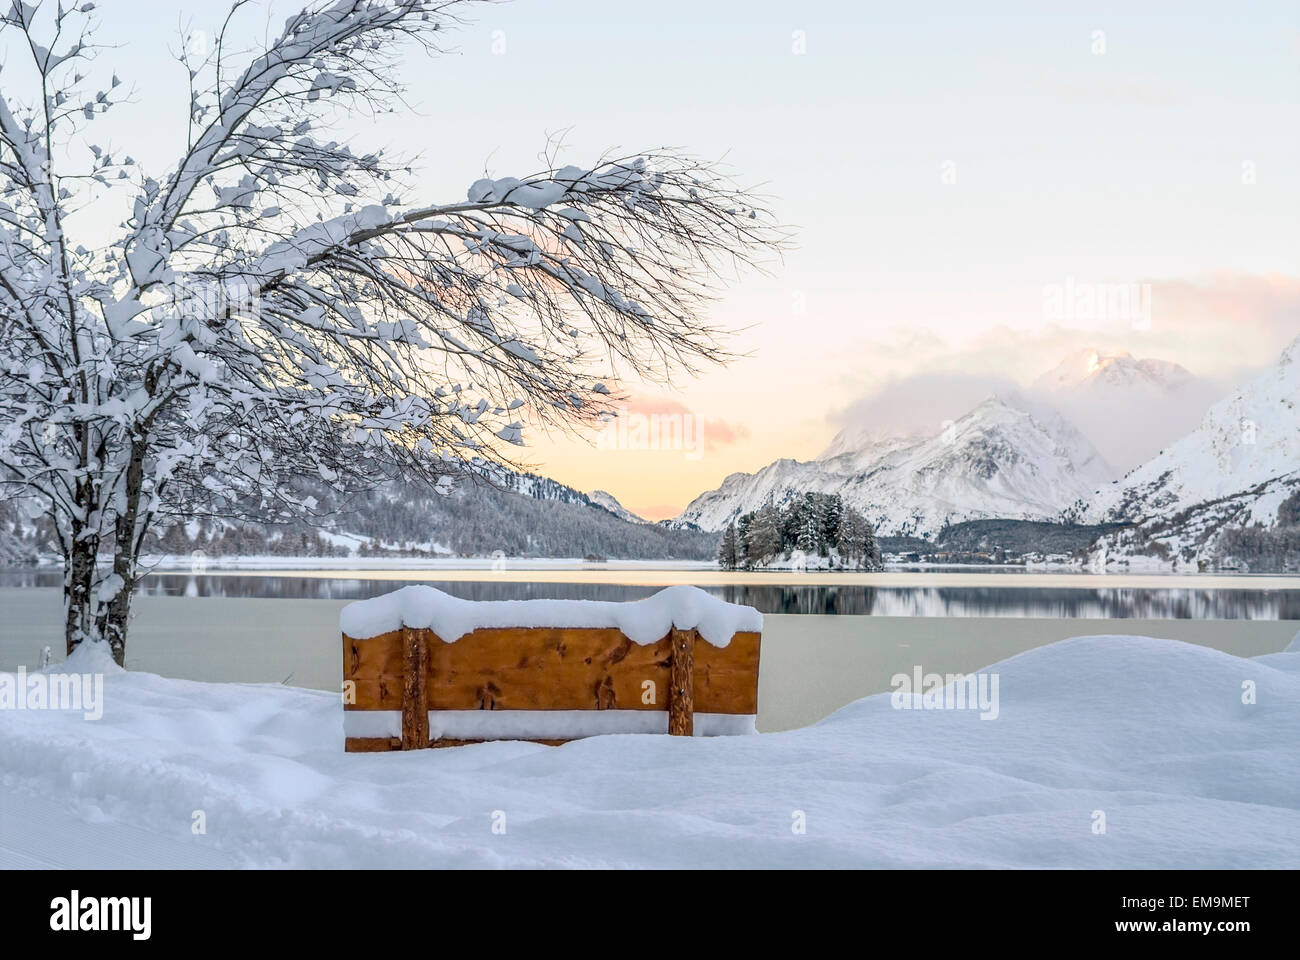 Winter landscape, Lake Sils, Sils Maria, Engadine, Switzerland Stock Photo